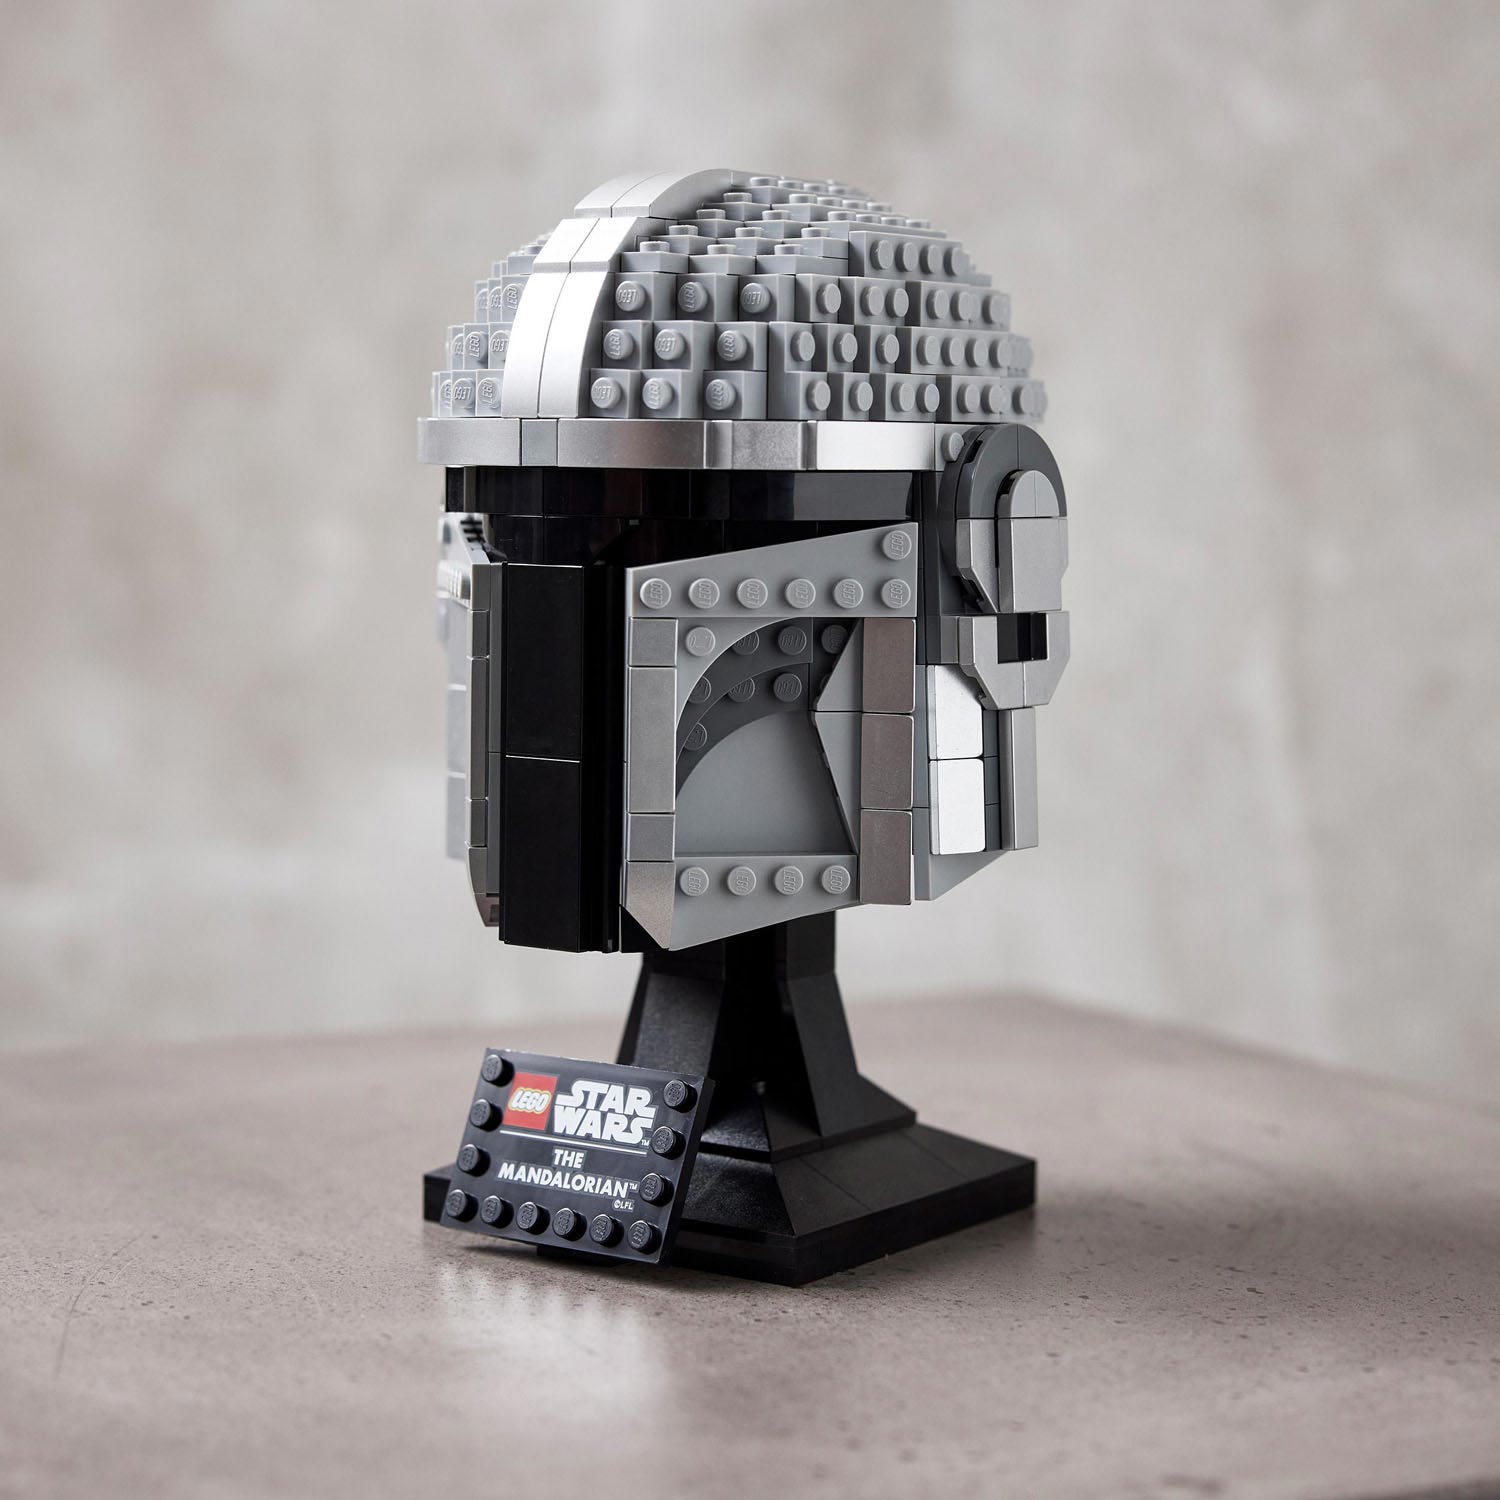 LEGO Star Wars 75328 Der mandalorianische Helm